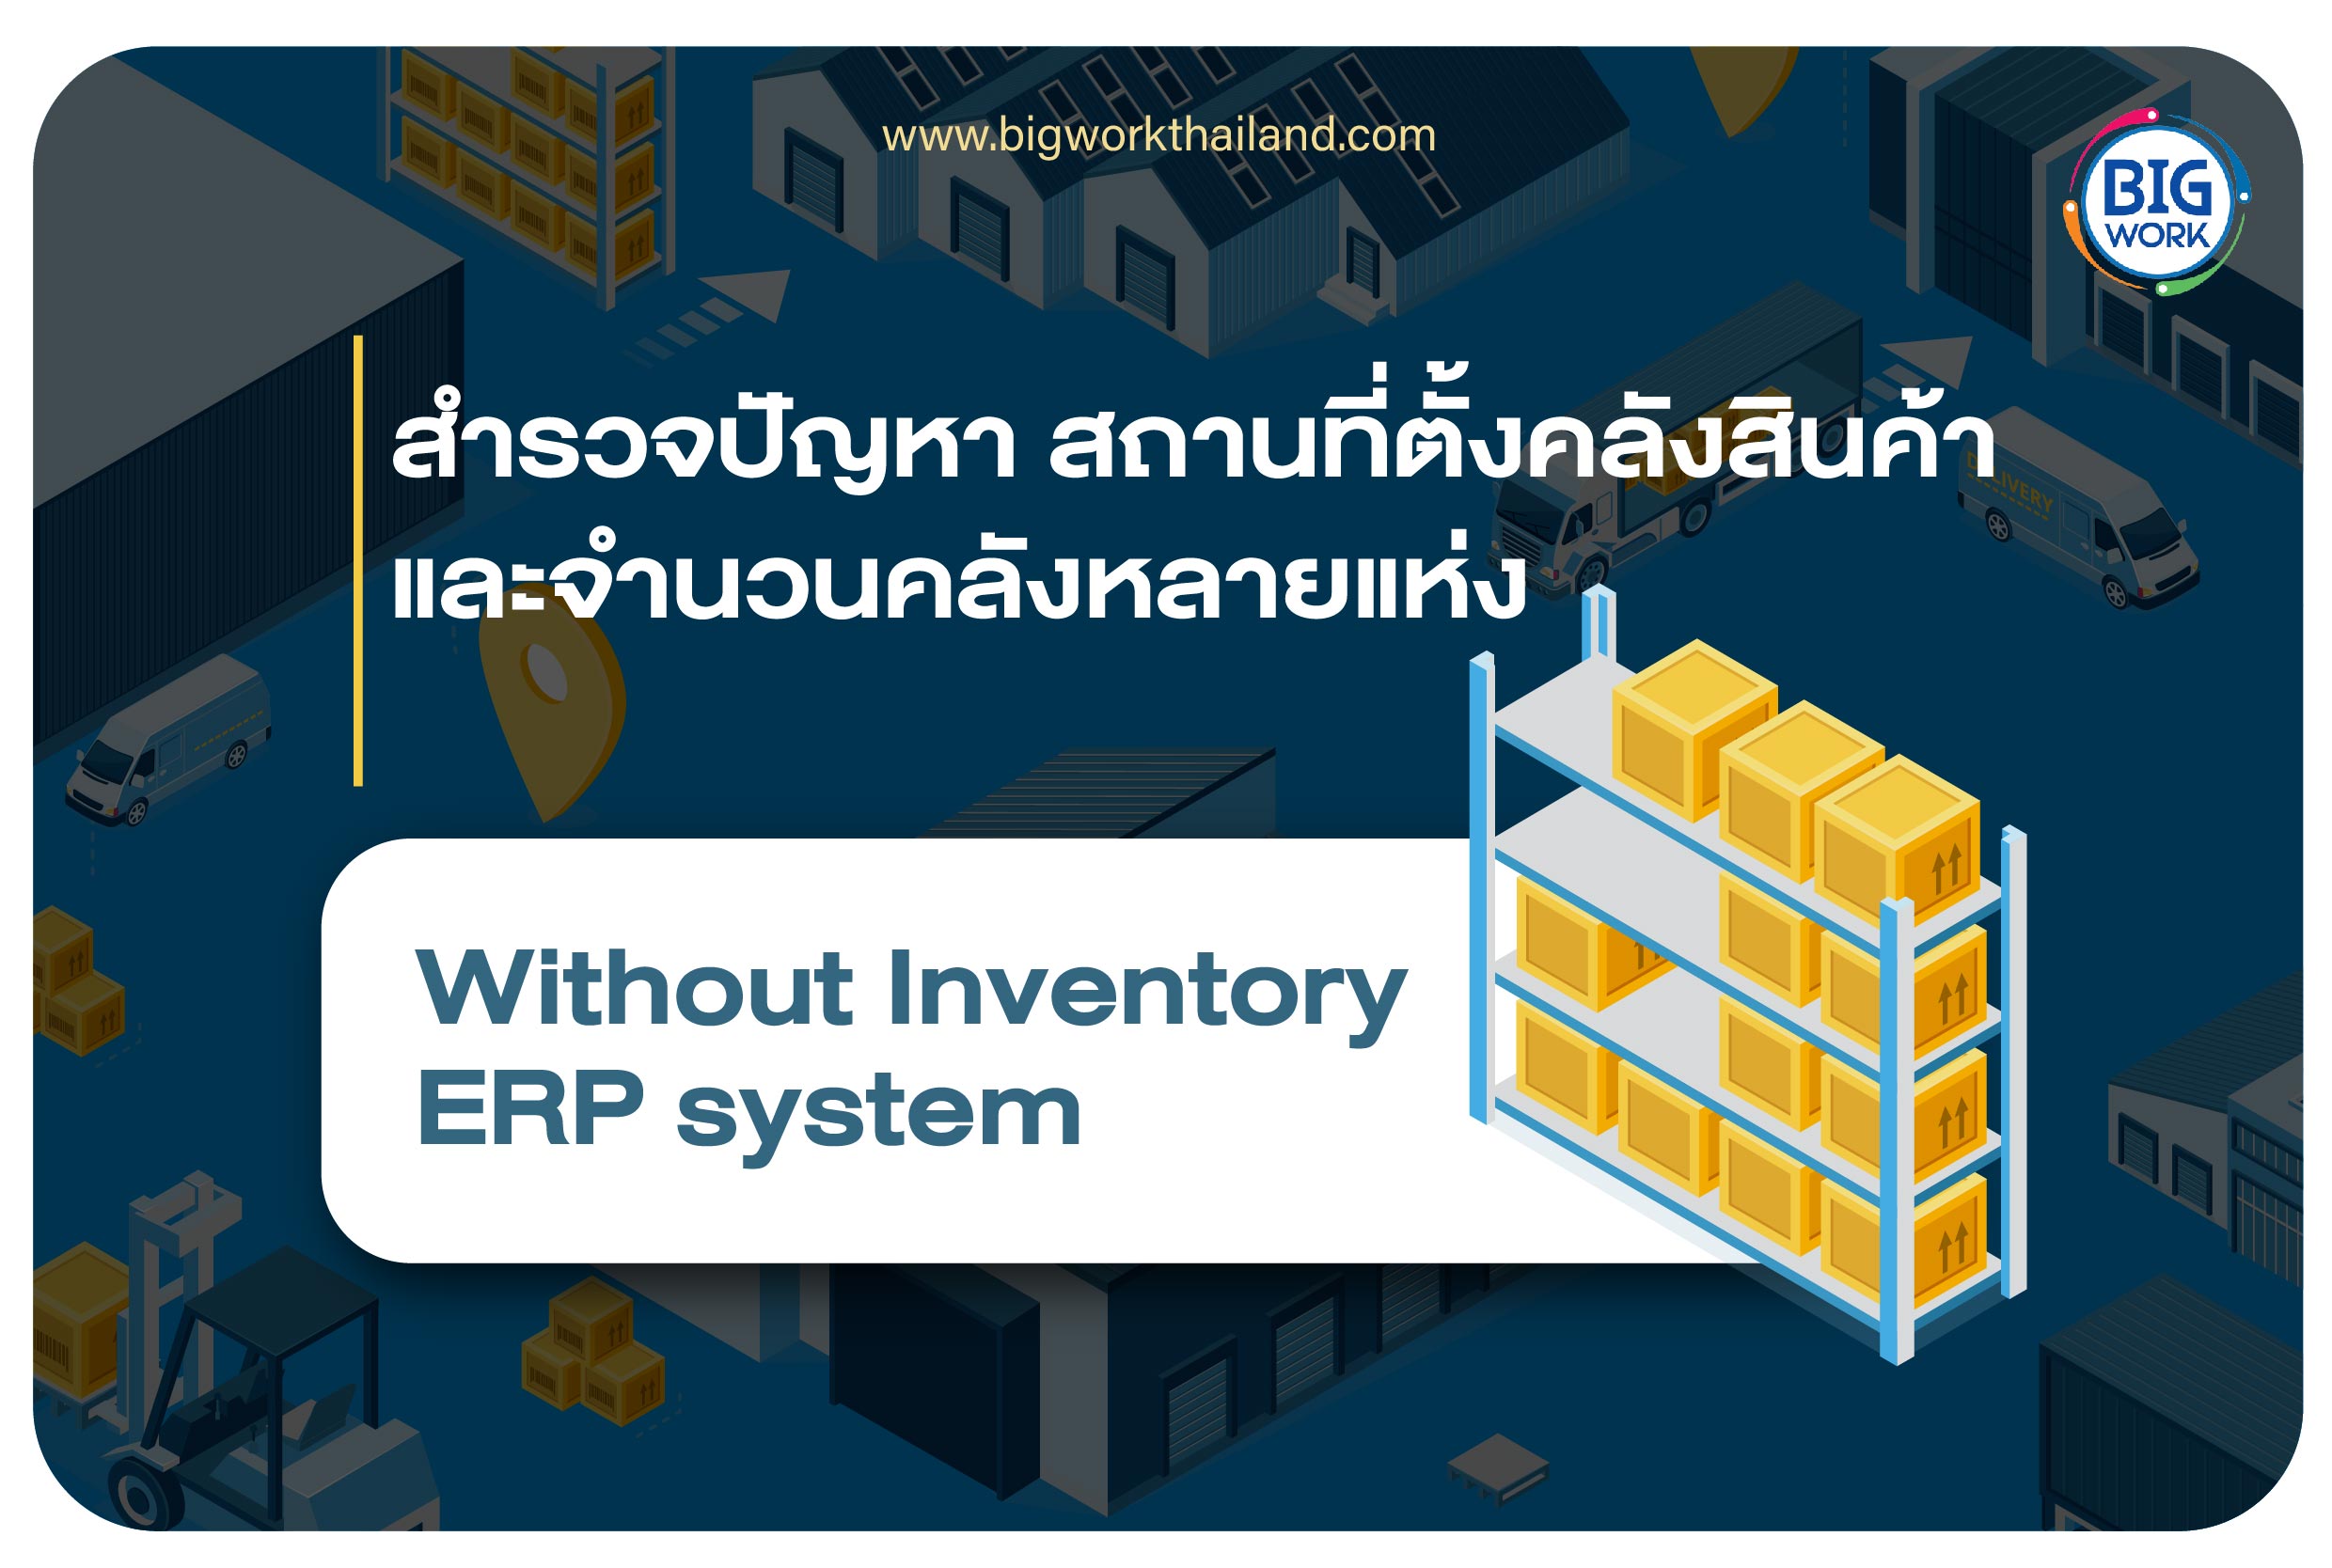 สำรวจปัญหา สถานที่ตั้งคลังสินค้า และจำนวนคลังหลายแห่ง Without Inventory ERP system